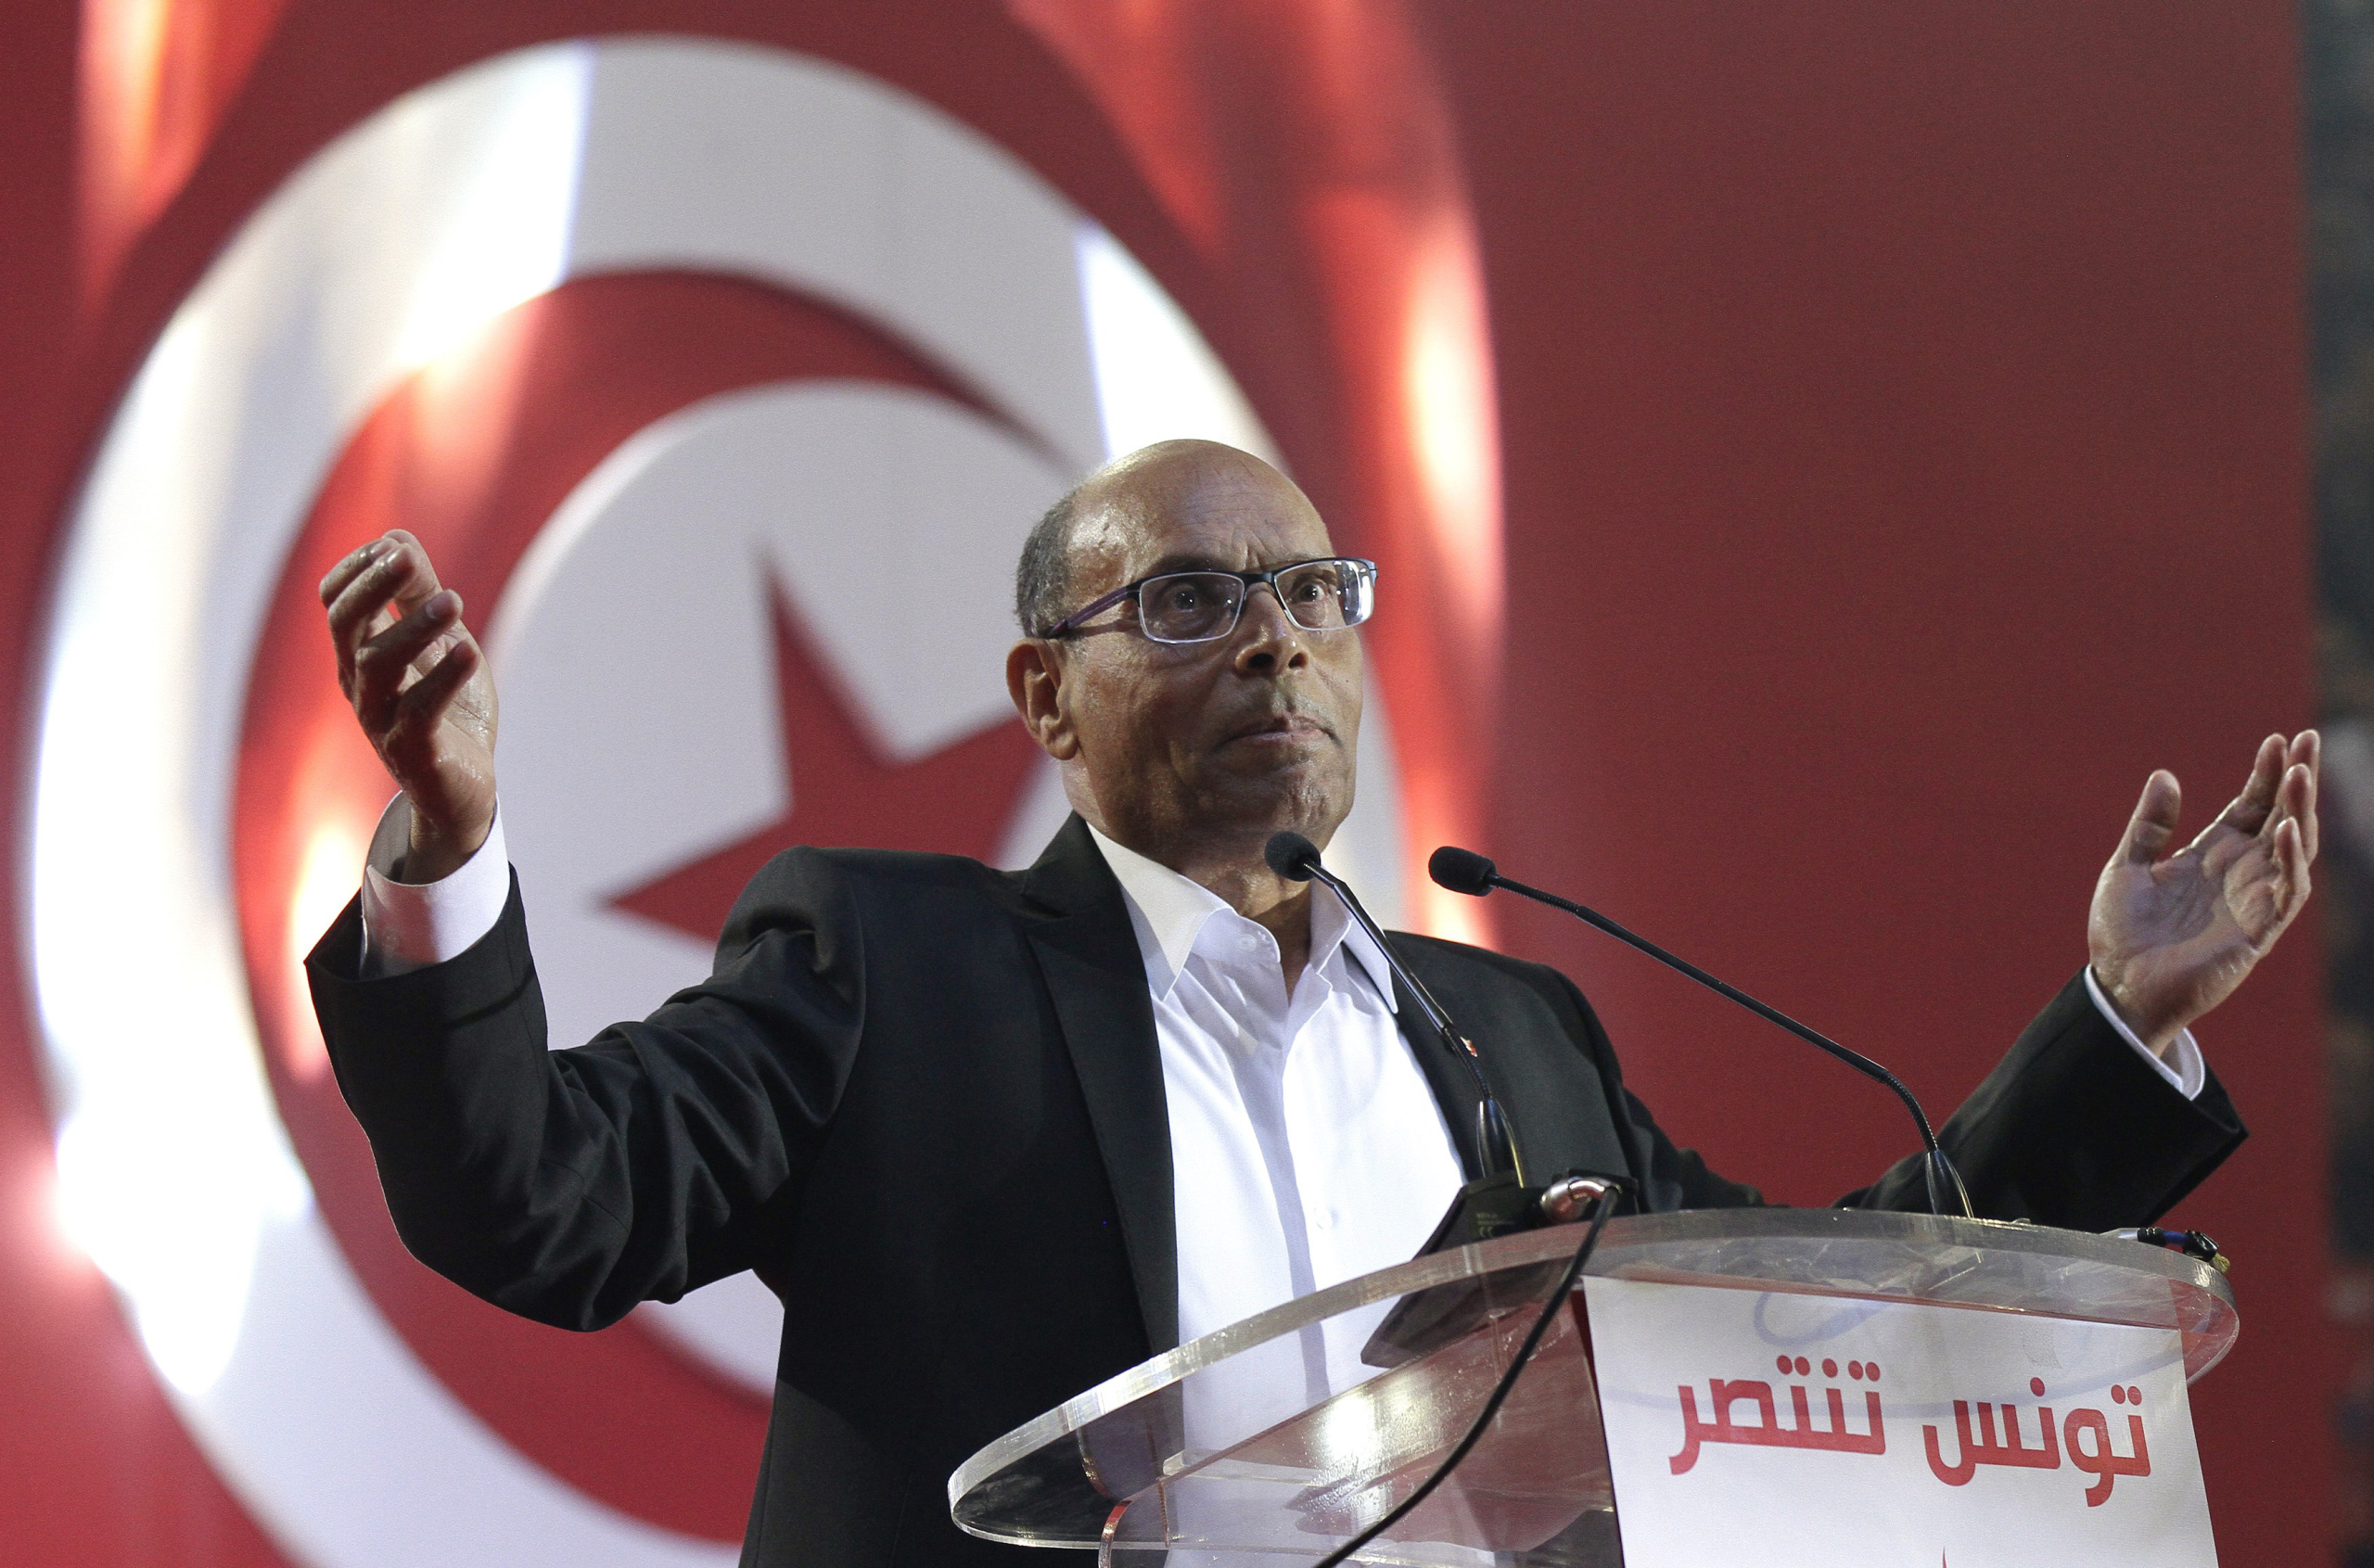 المرزوقي: ليست تونس من طعنت المغرب بل رئيس انقلابي طعن تونس نفسها